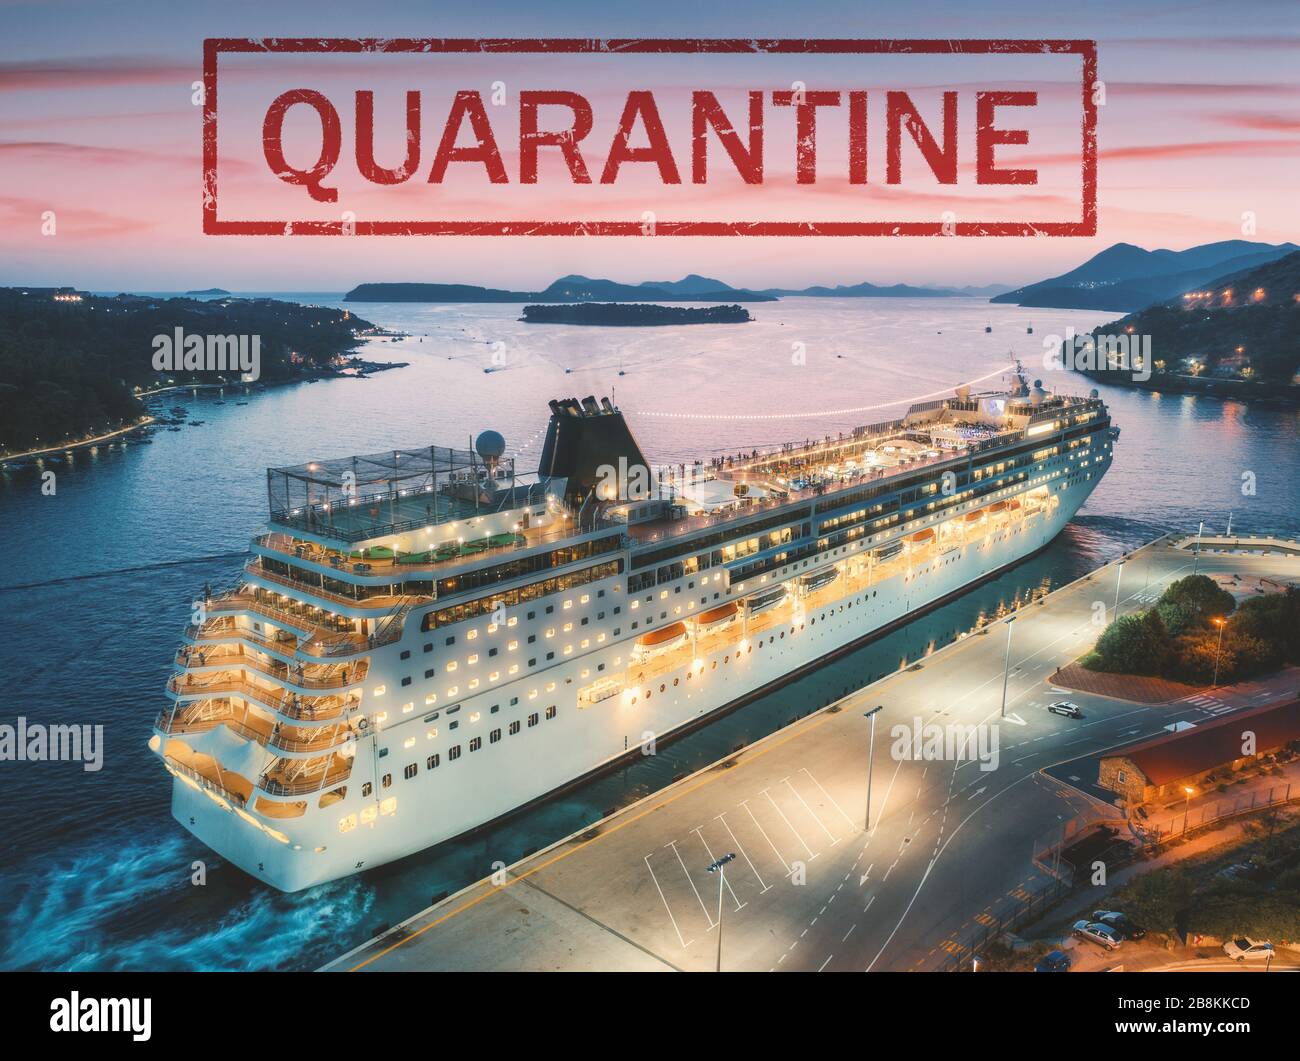 Quarantine in cruise ship because of pandemic of coronavirus Stock Photo